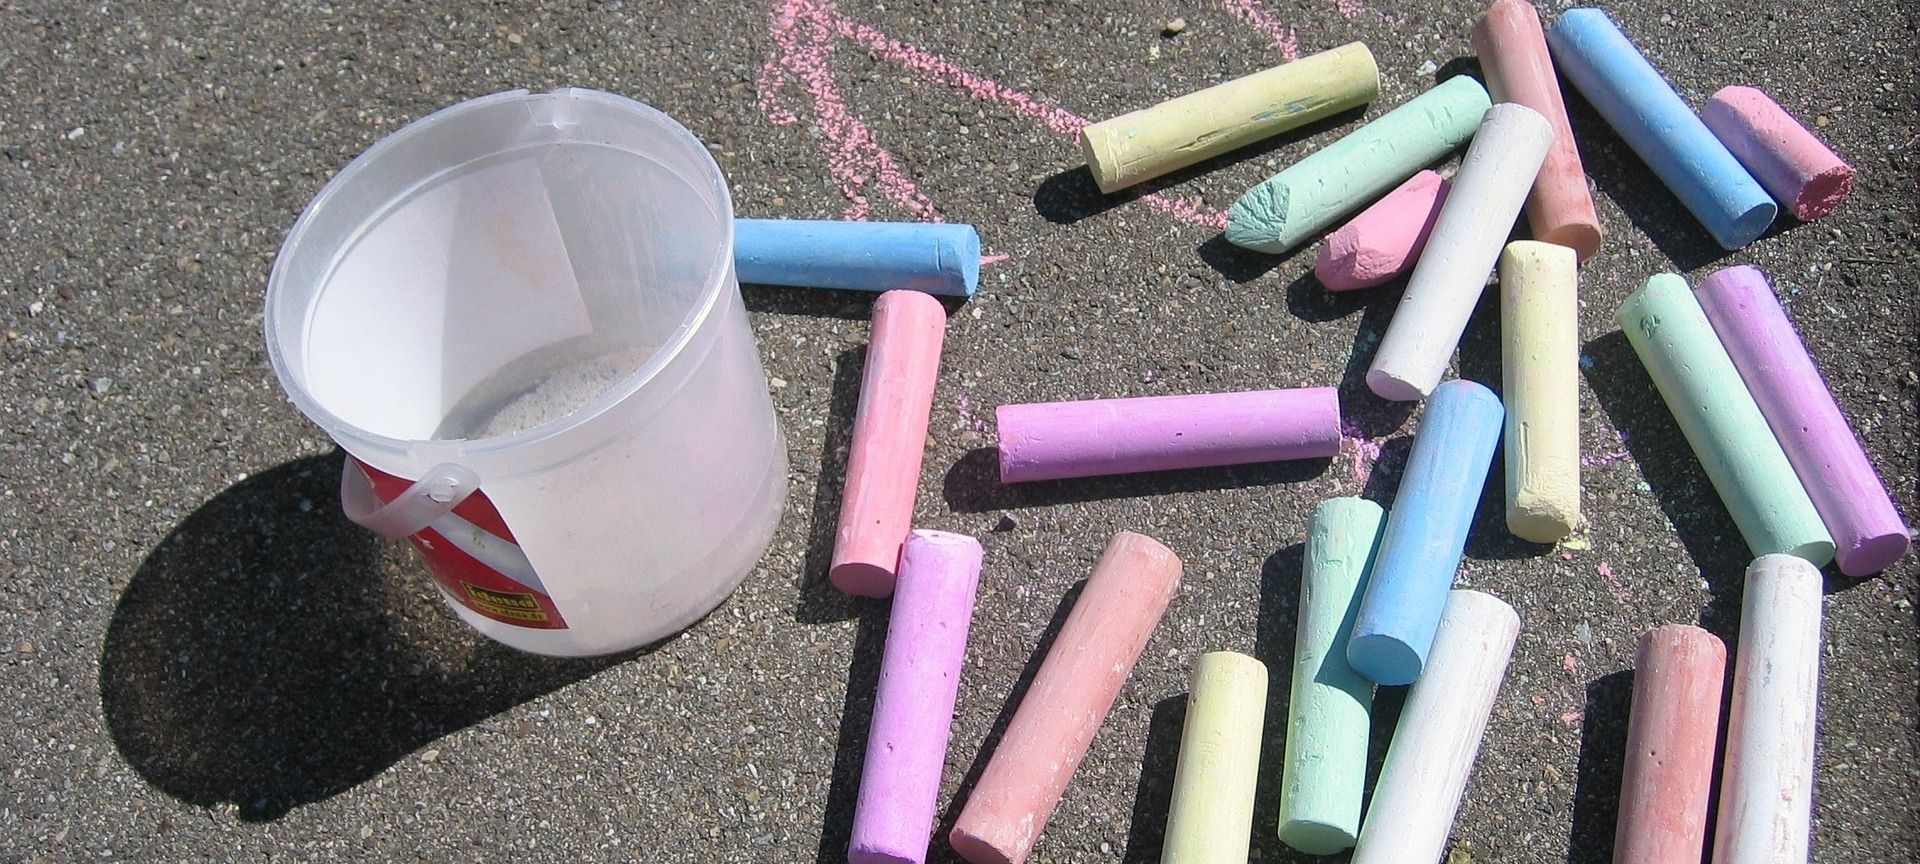 Chalks in playground